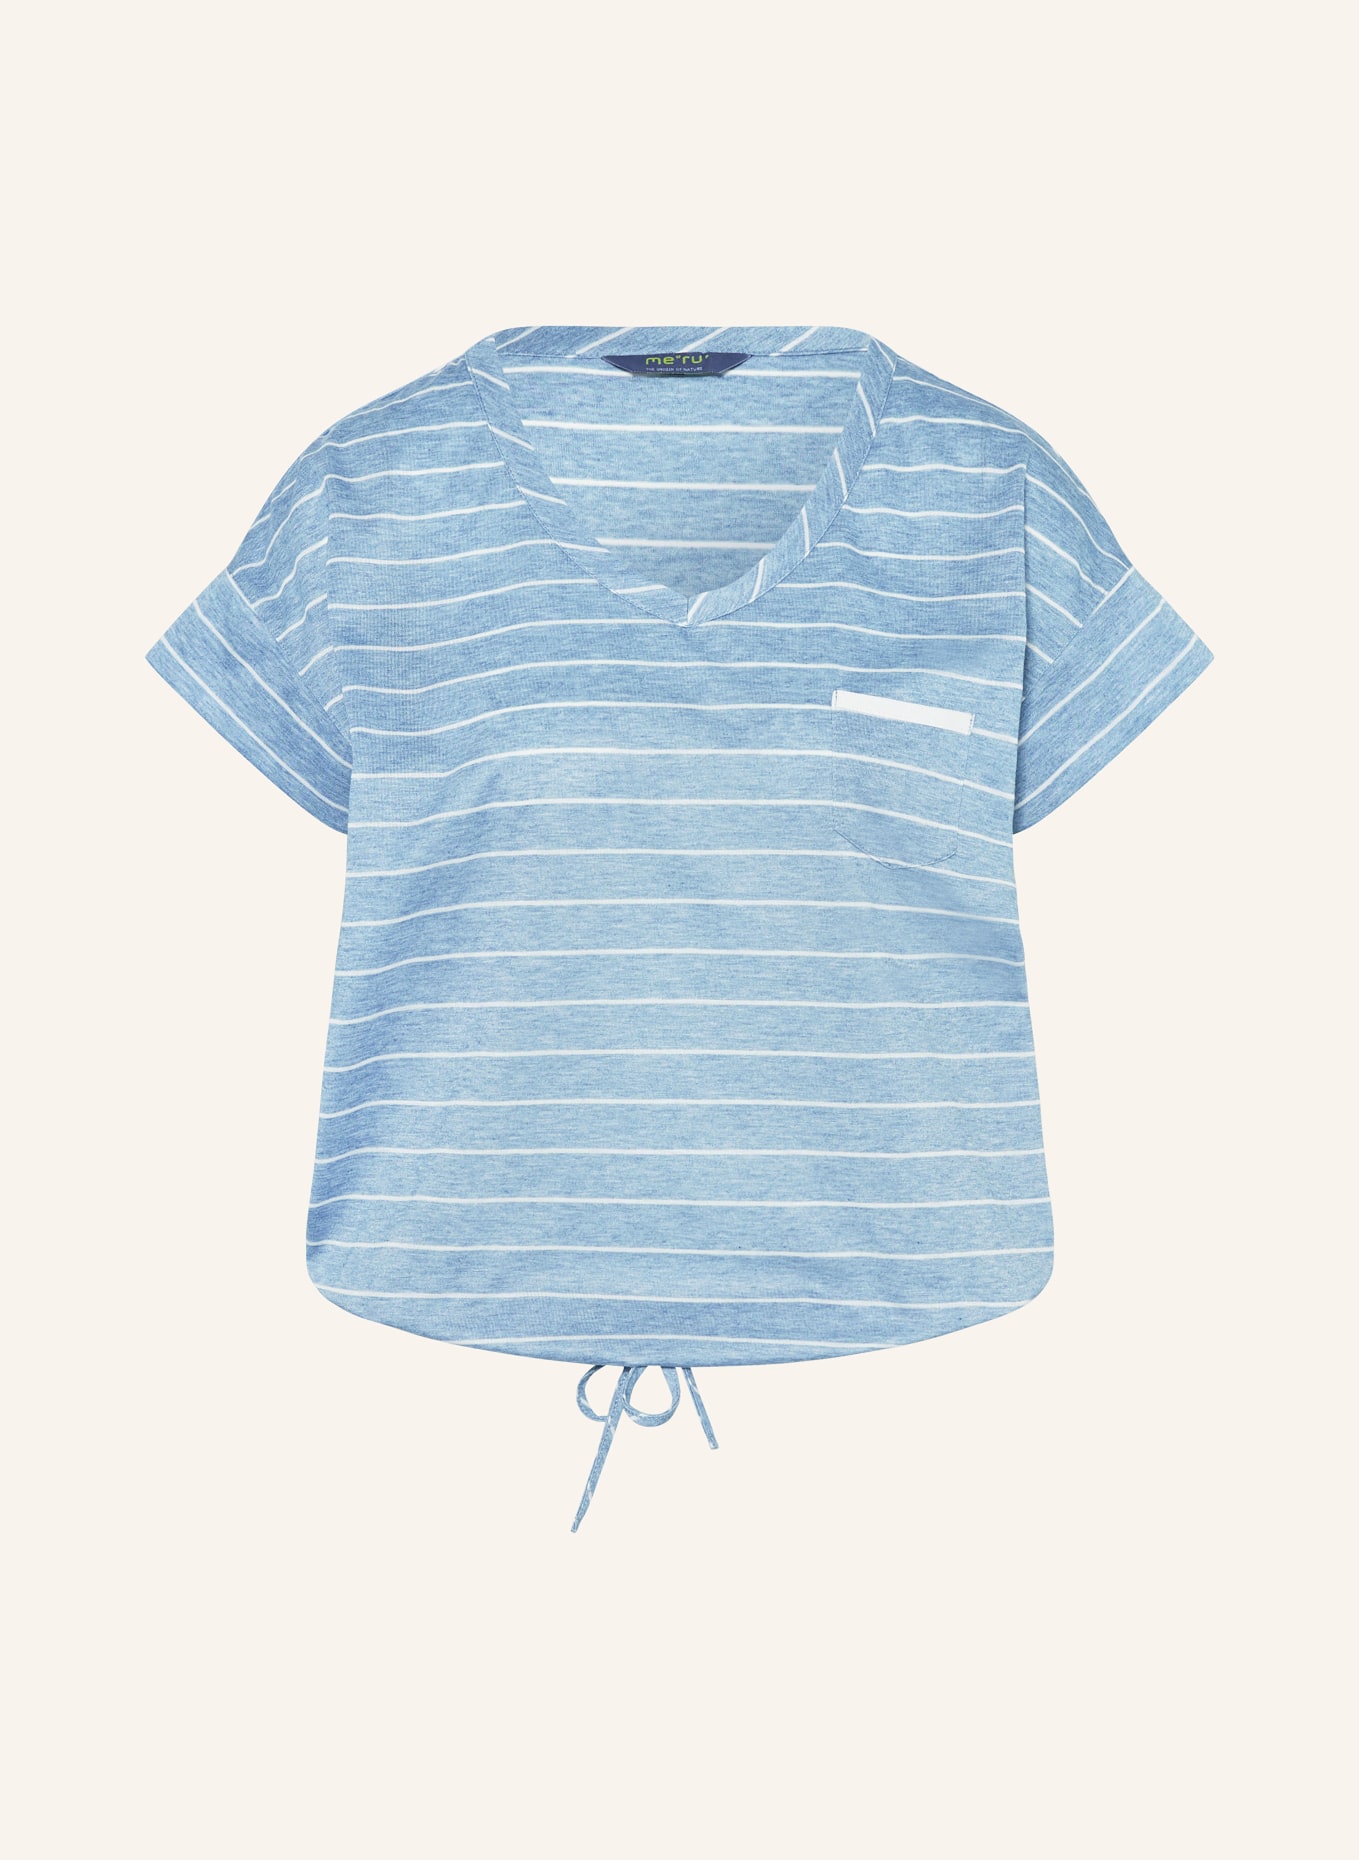 me°ru' T-shirt WINDHOEK, Color: LIGHT BLUE/ BLUE (Image 1)